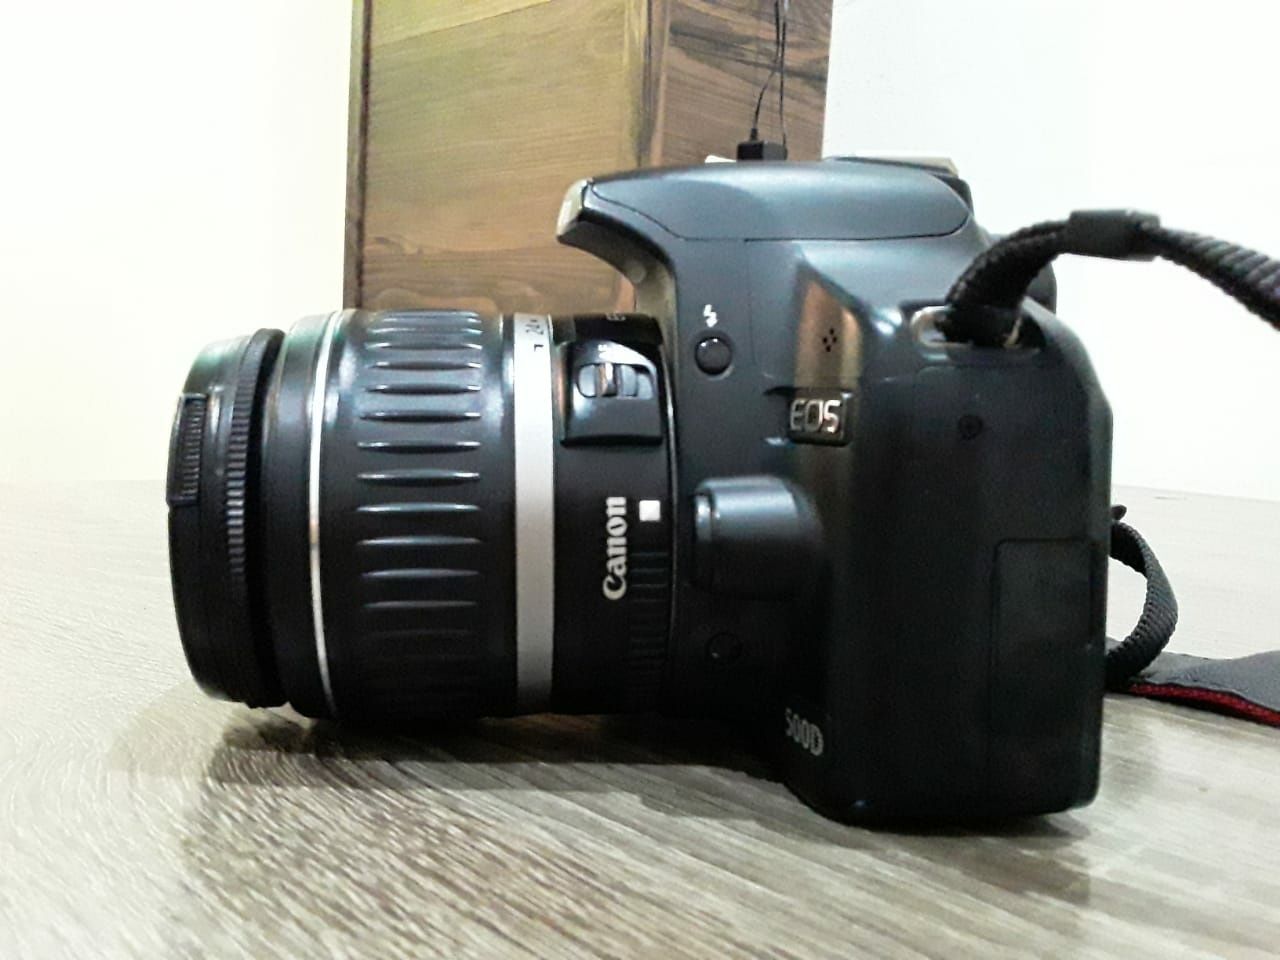 Продам фотоаппарат Canon 500D в отличном состоянии.